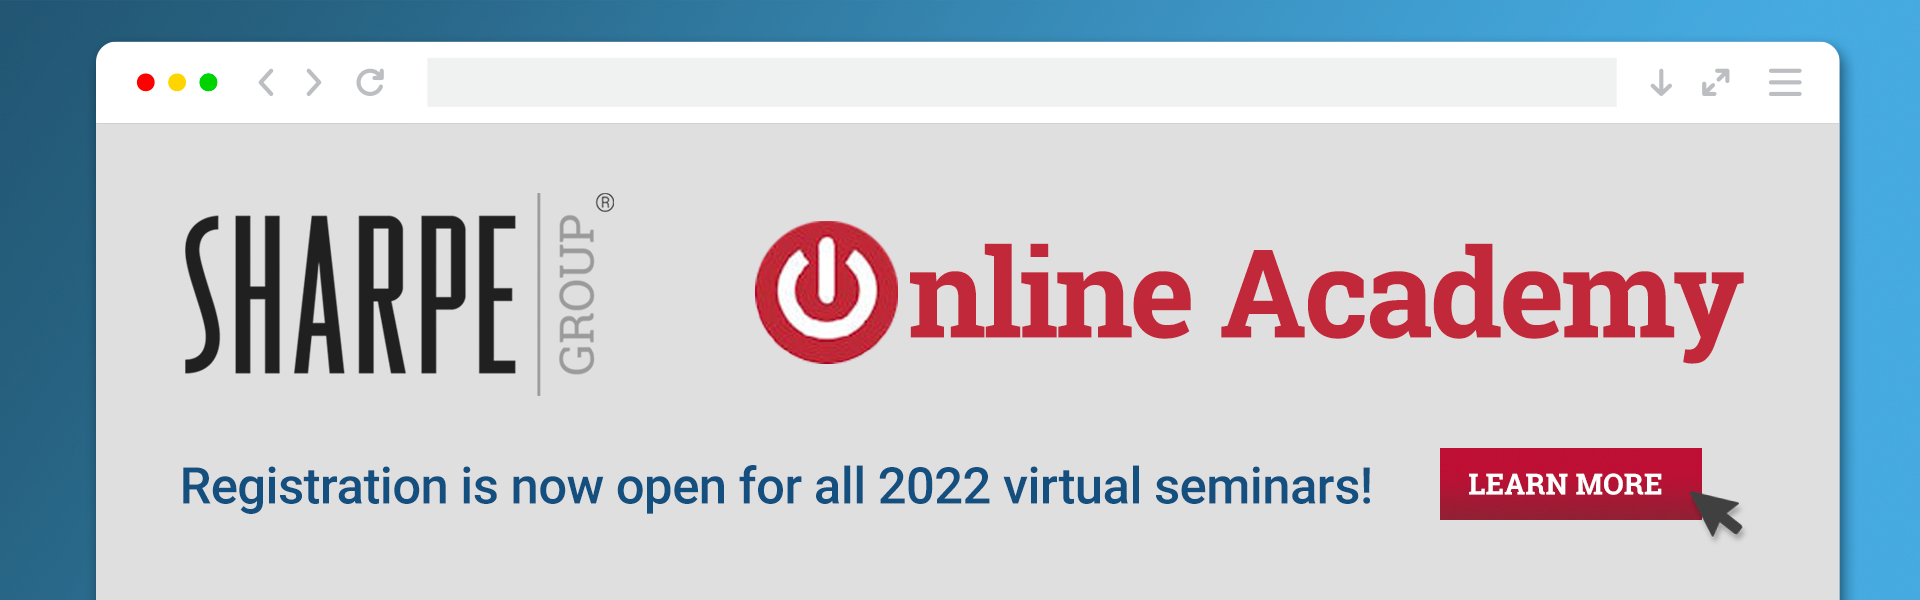 Sharpe 2022 Online Academy